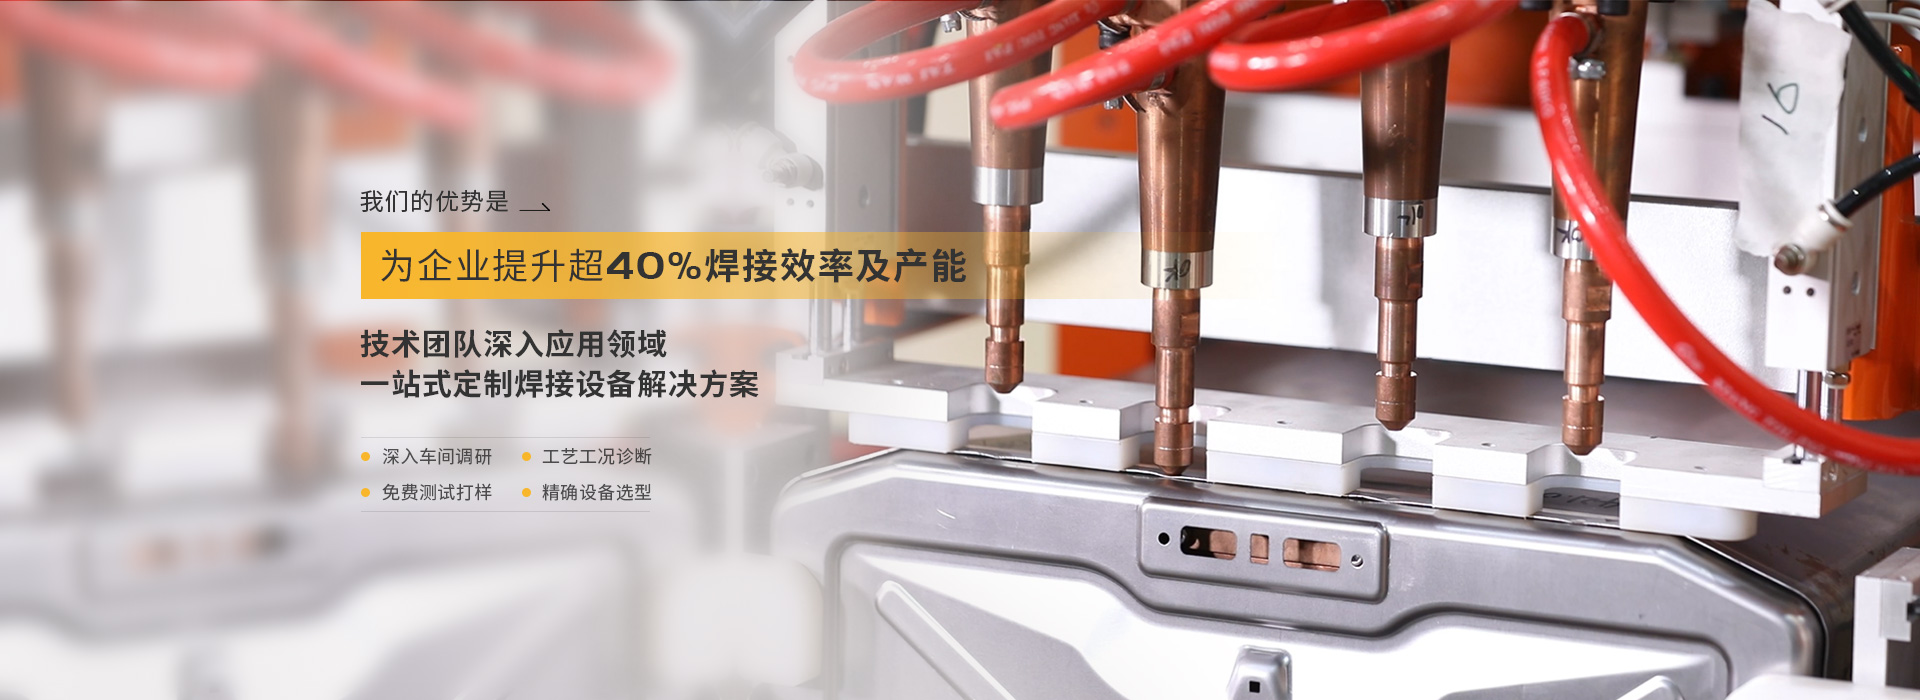 YSB易胜博集团，为企业提升超40%焊接效率以及产能